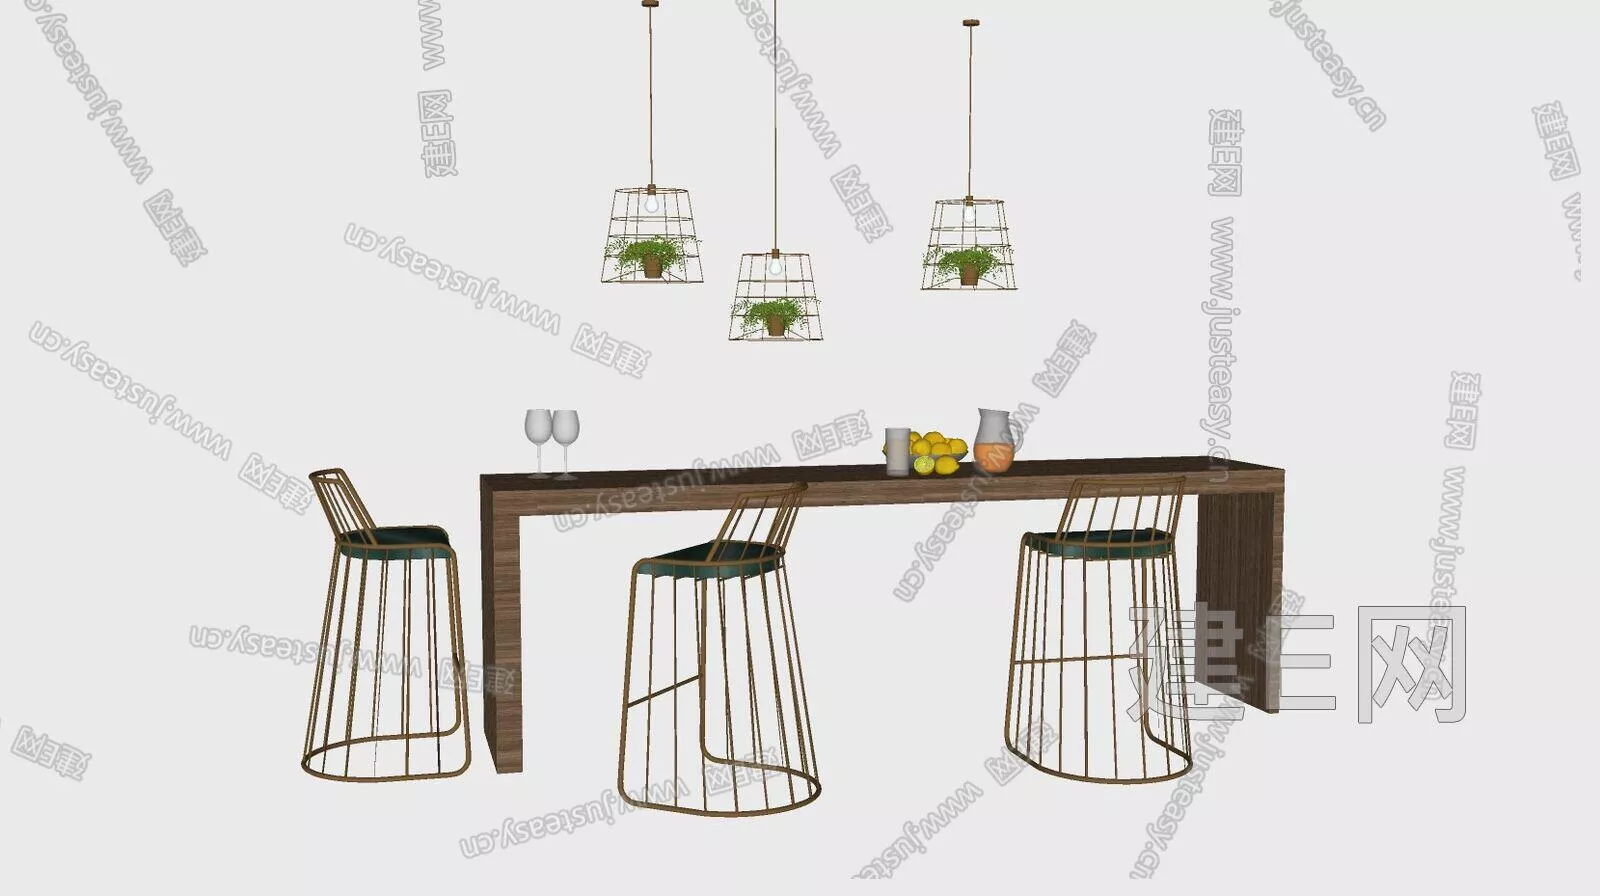 INDUSTRIAL DINING TABLE SET - SKETCHUP 3D MODEL - ENSCAPE - 110838229